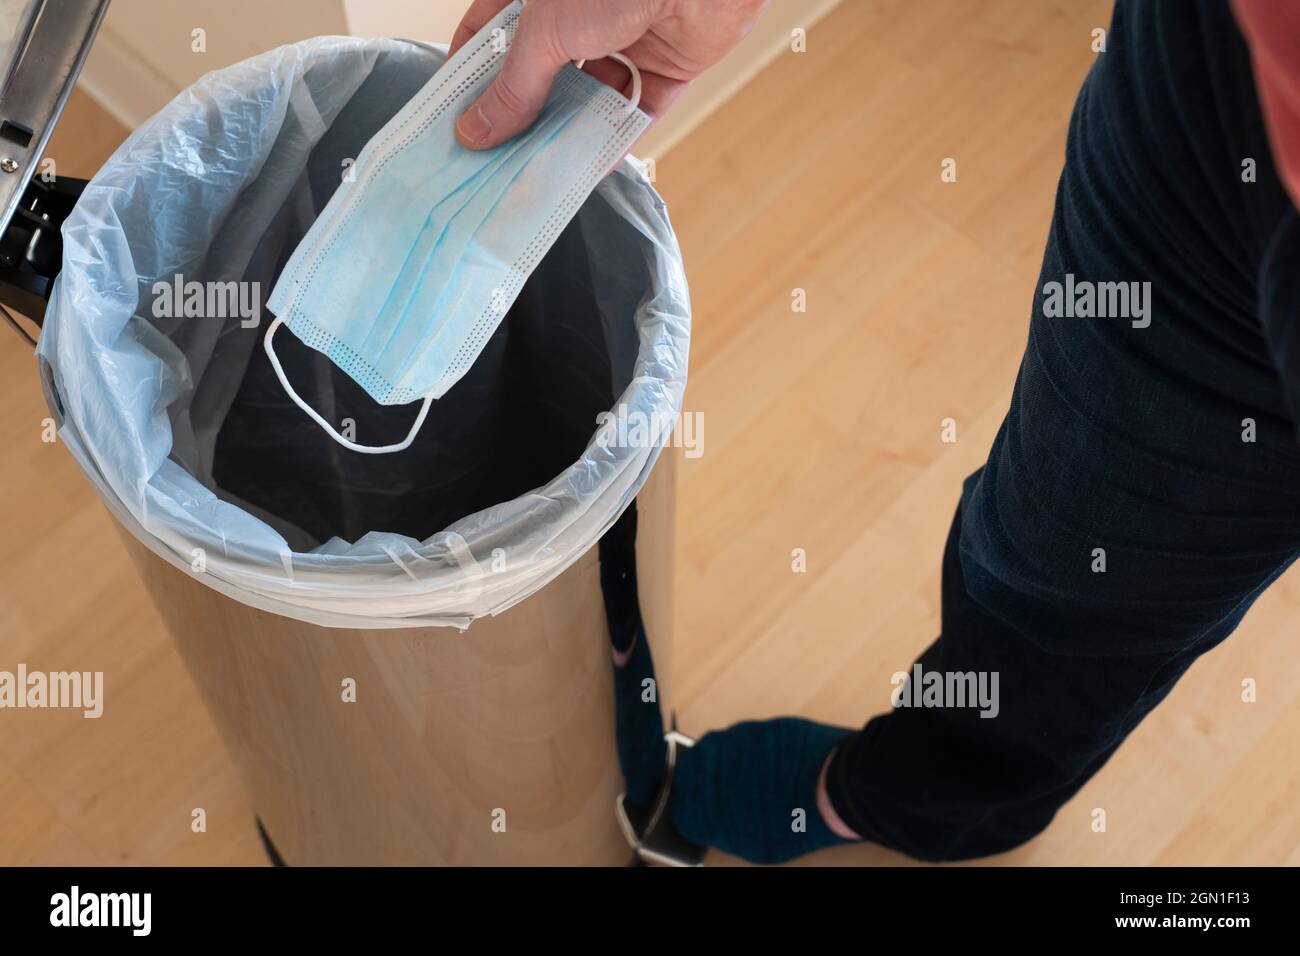 Un homme qui jette un masque chirurgical jetable bleu dans une poubelle à pédale. Concept: Anti-maçon, pas de masque facial, binning masque facial, masque débat Banque D'Images